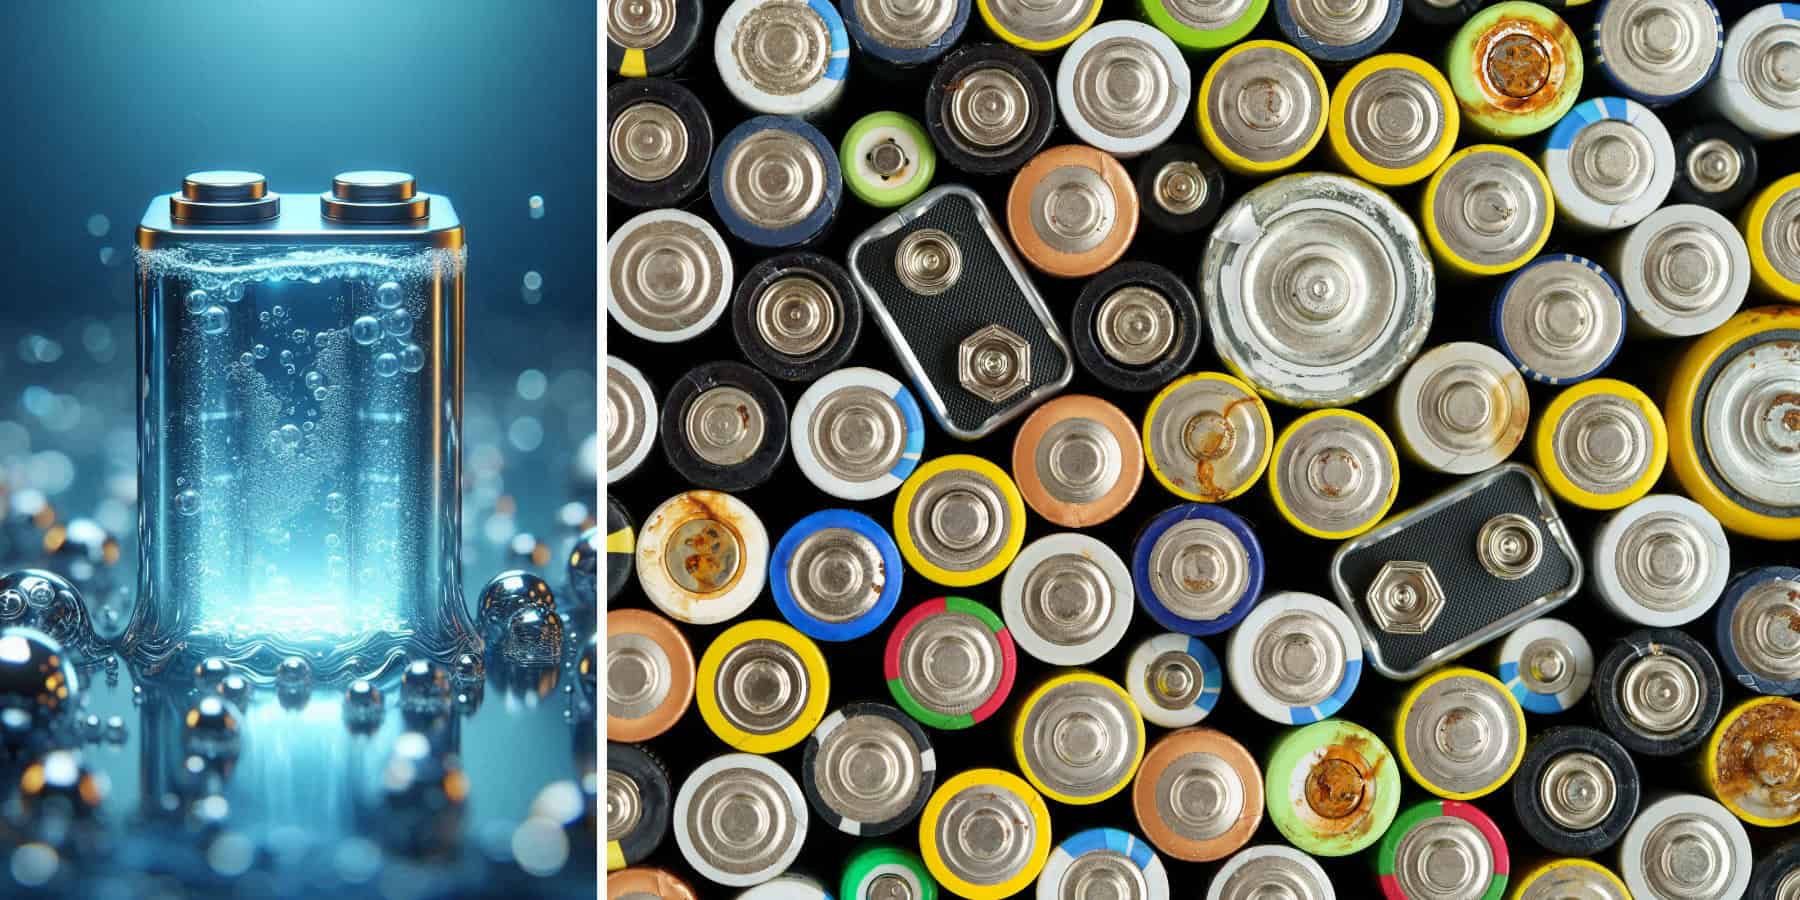 Energia nie zginie z baterią w płynie. Nowy pomysł naukowców ze Stanforda